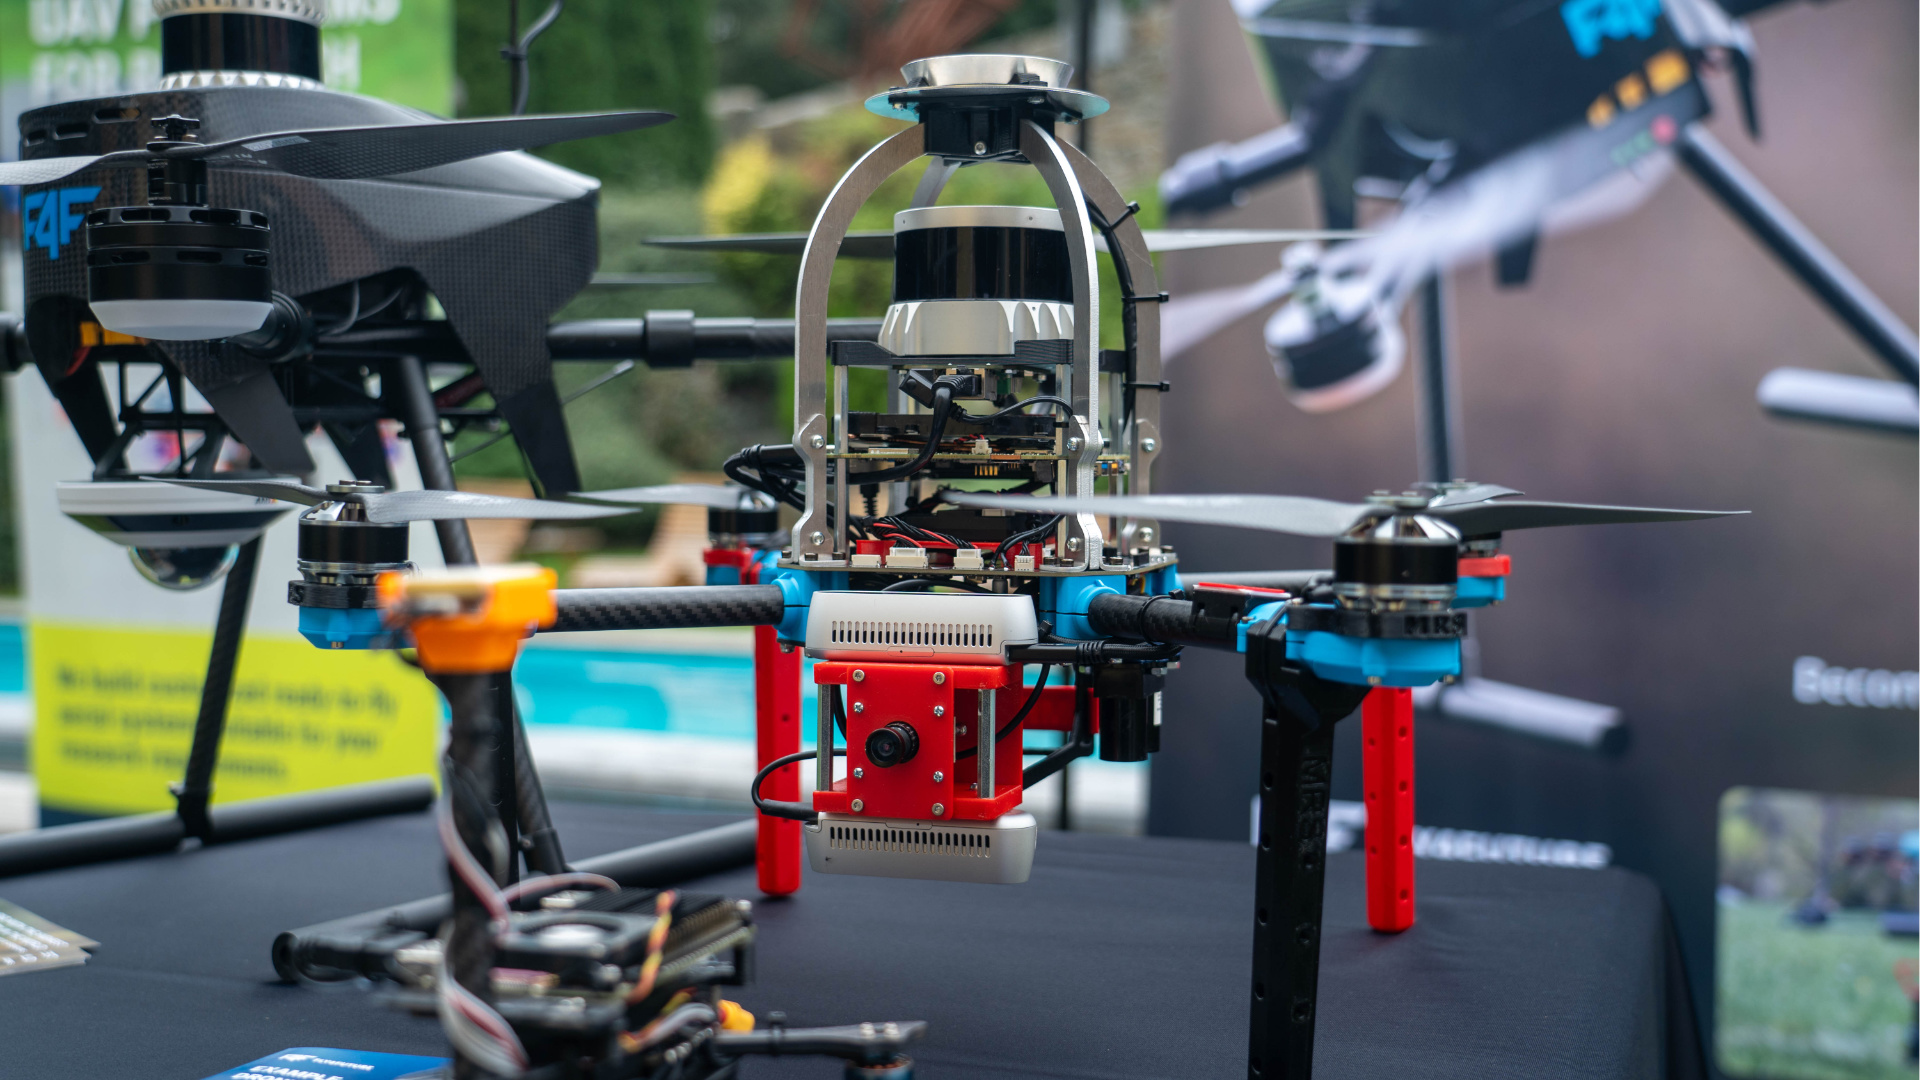 Dron Fly4Future dokáže provádět autonomní patrolaci nad stanoveným perimetrem a obraz z kamery Axis je součástí běžného kamerového systému. Robopes Spot zase s pomocí kamery rozpozná člověka od zvířete nebo vozu a případné narušitele osloví s pomocí 